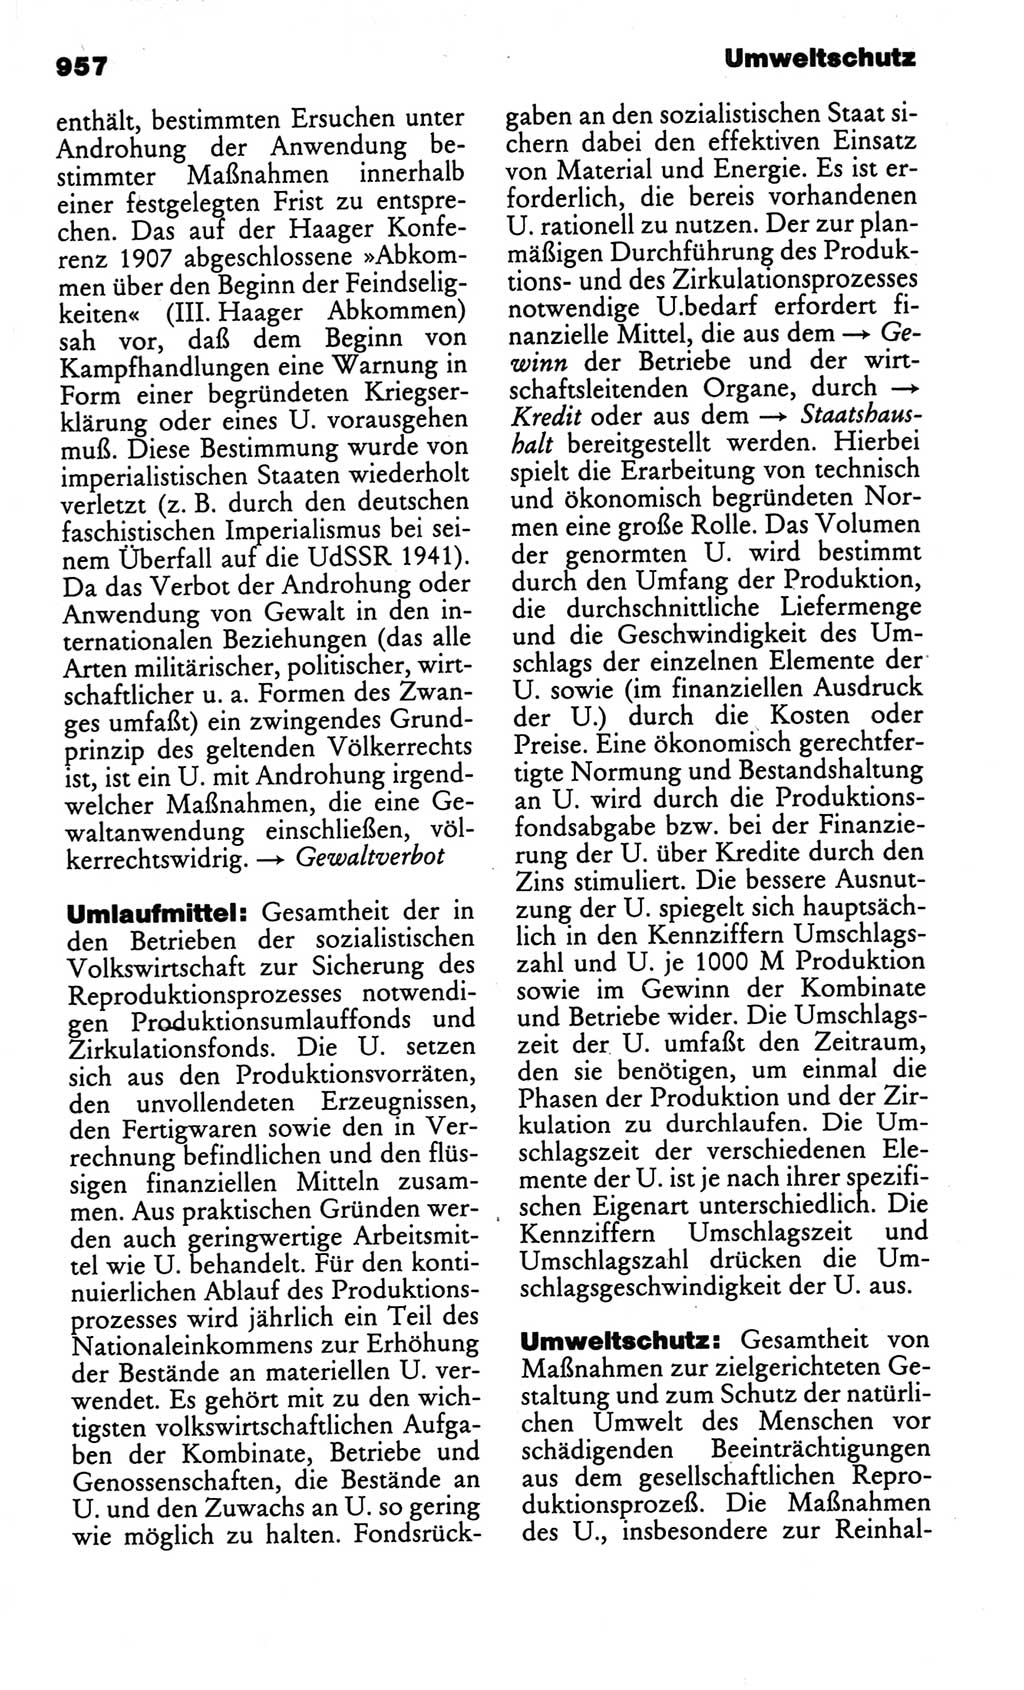 Kleines politisches Wörterbuch [Deutsche Demokratische Republik (DDR)] 1986, Seite 957 (Kl. pol. Wb. DDR 1986, S. 957)